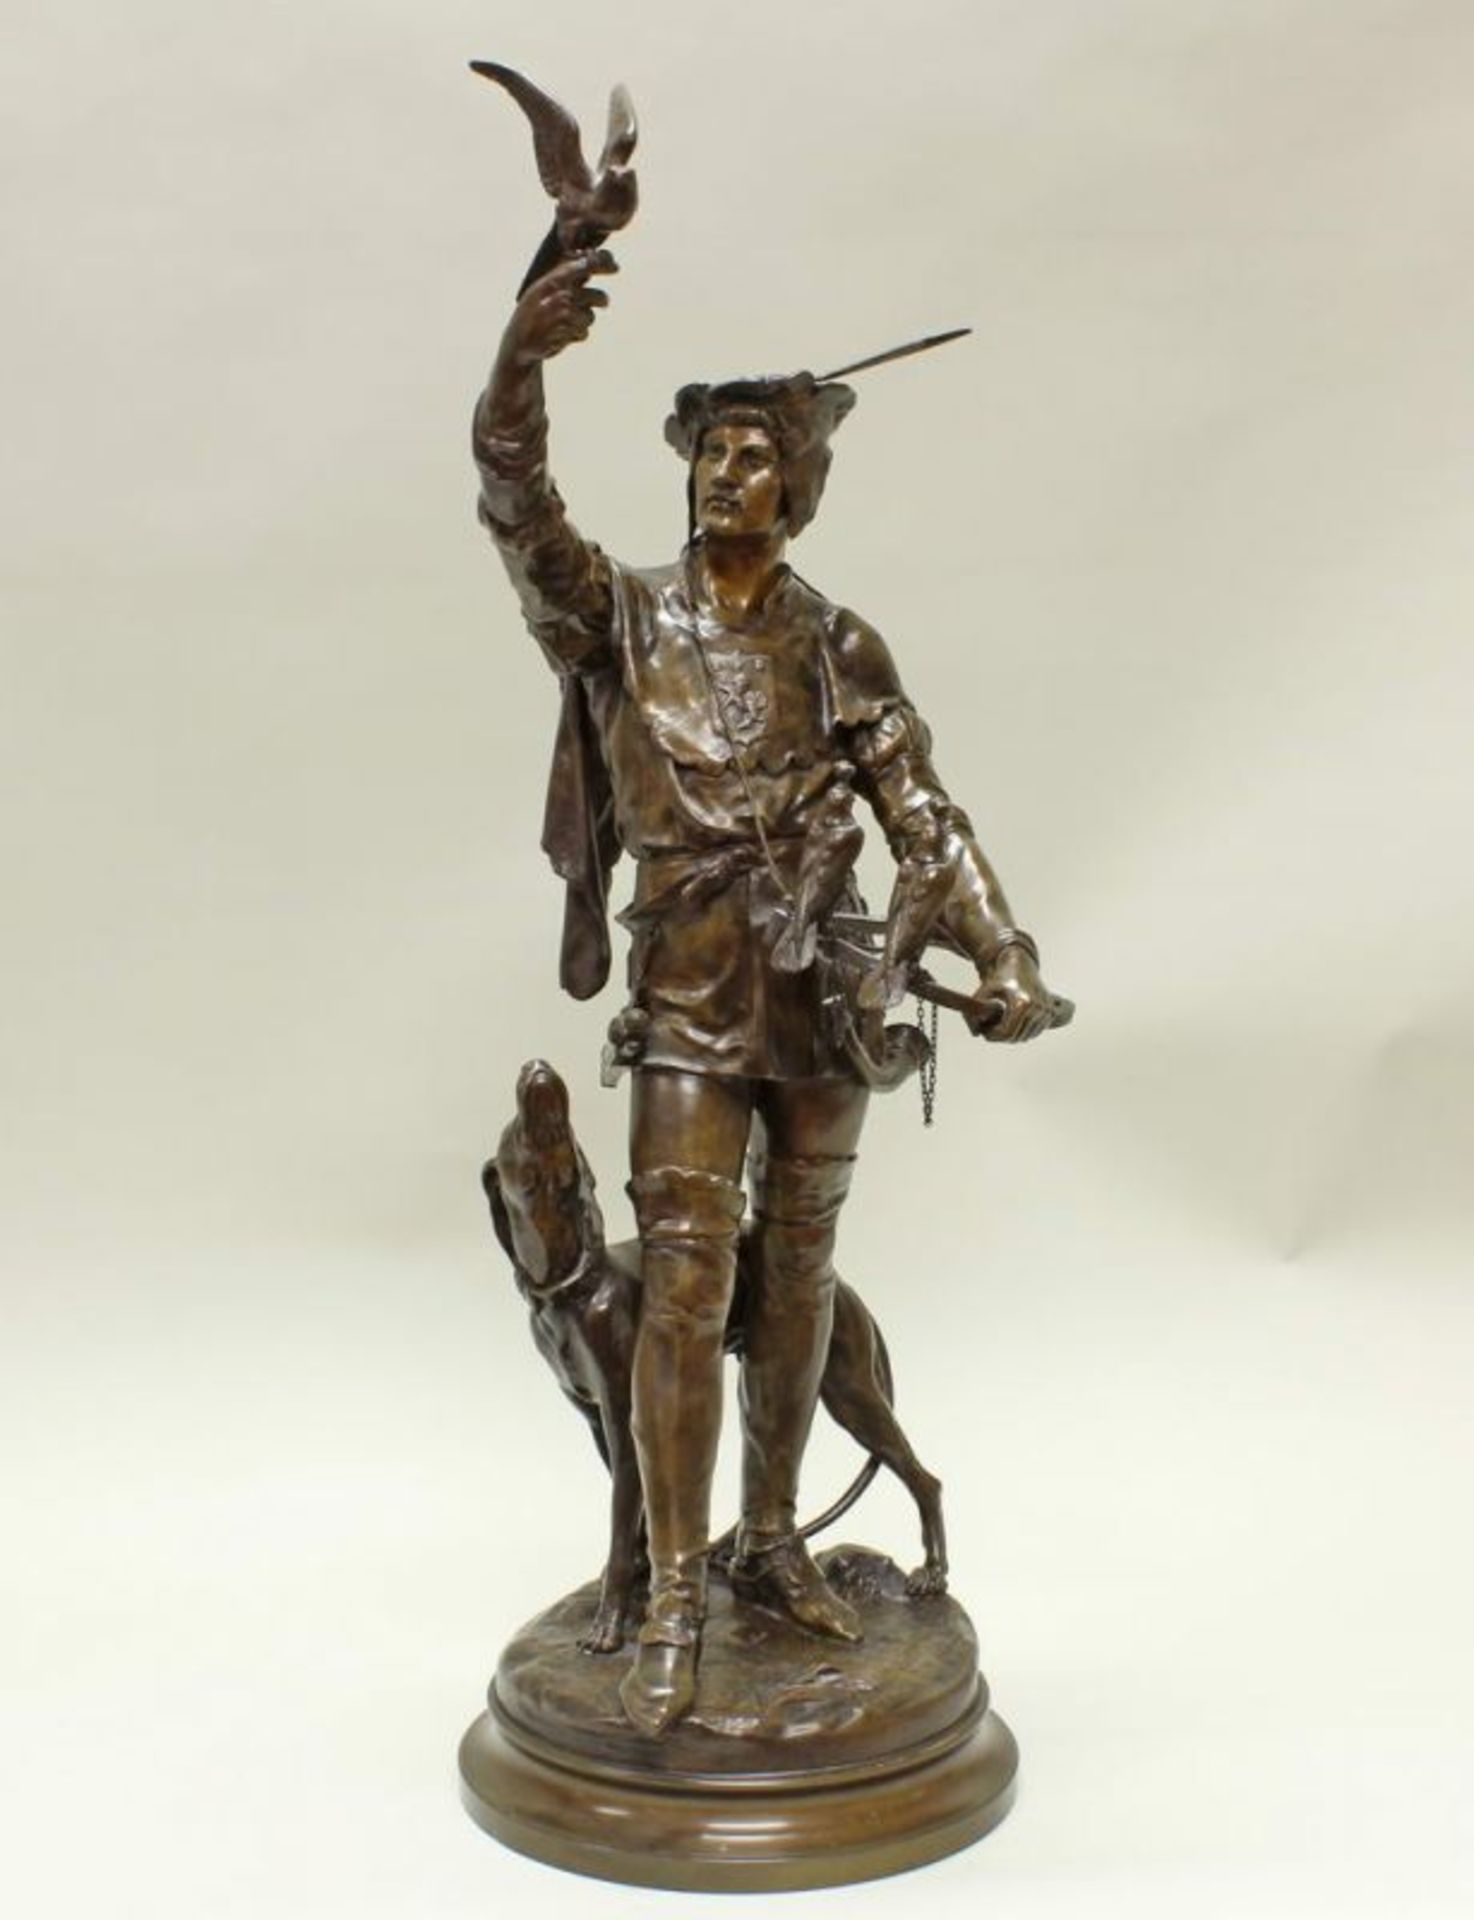 Bronze, braun patiniert, "Falconnier/Falkner", auf der Standfläche bezeichnet E. Picault, verso